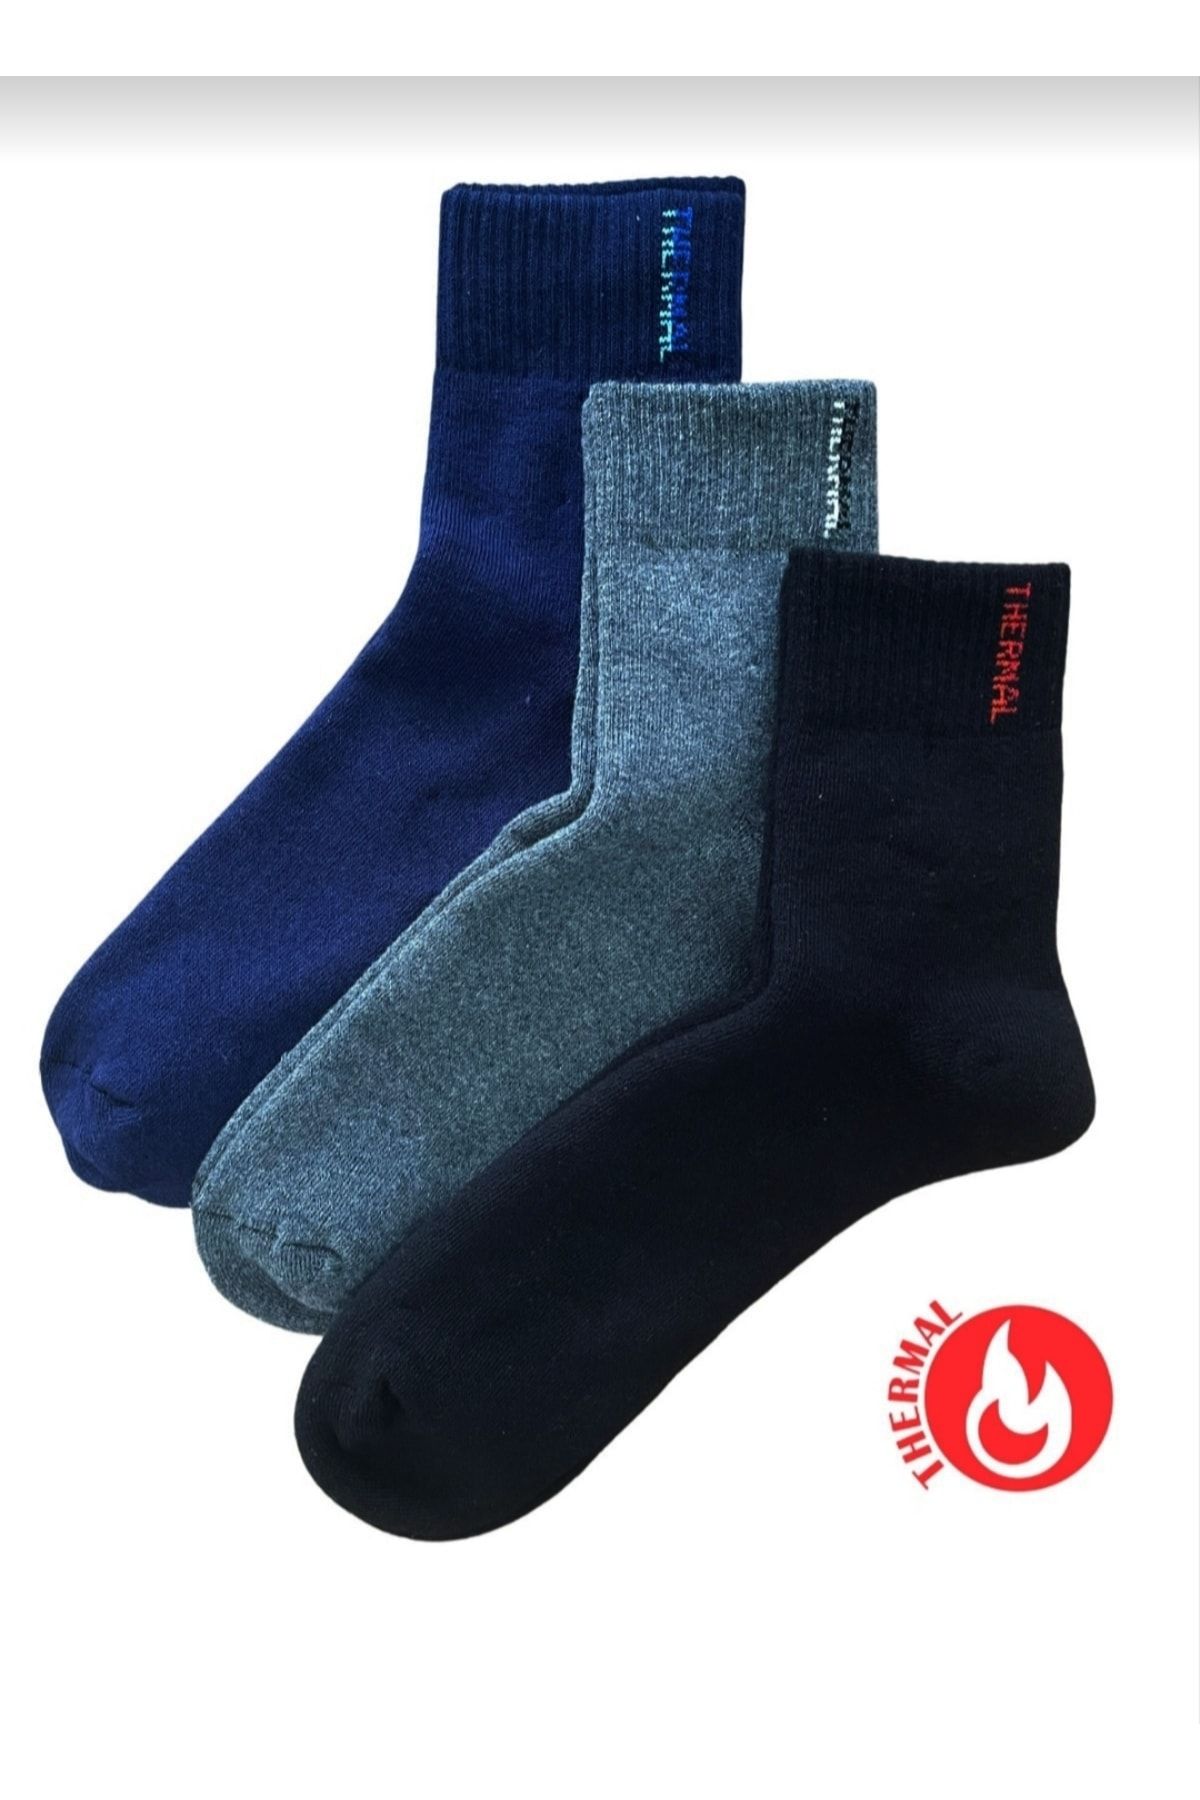 BERELCAN Dikişsiz Termal Havlu Çorap Kışlık Çorap